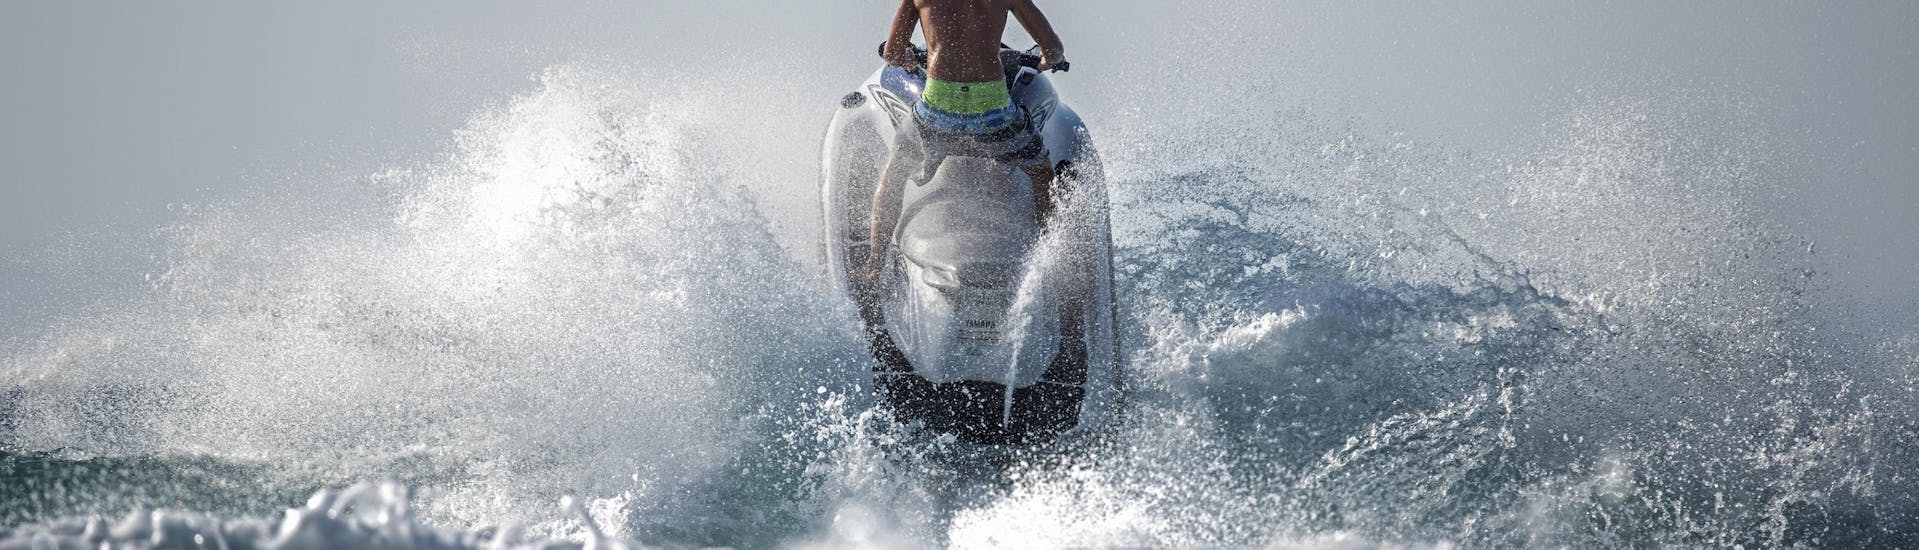 Moto d'acqua nella Baia di Ixia a Rodi con Windsurfers' World Rhodes